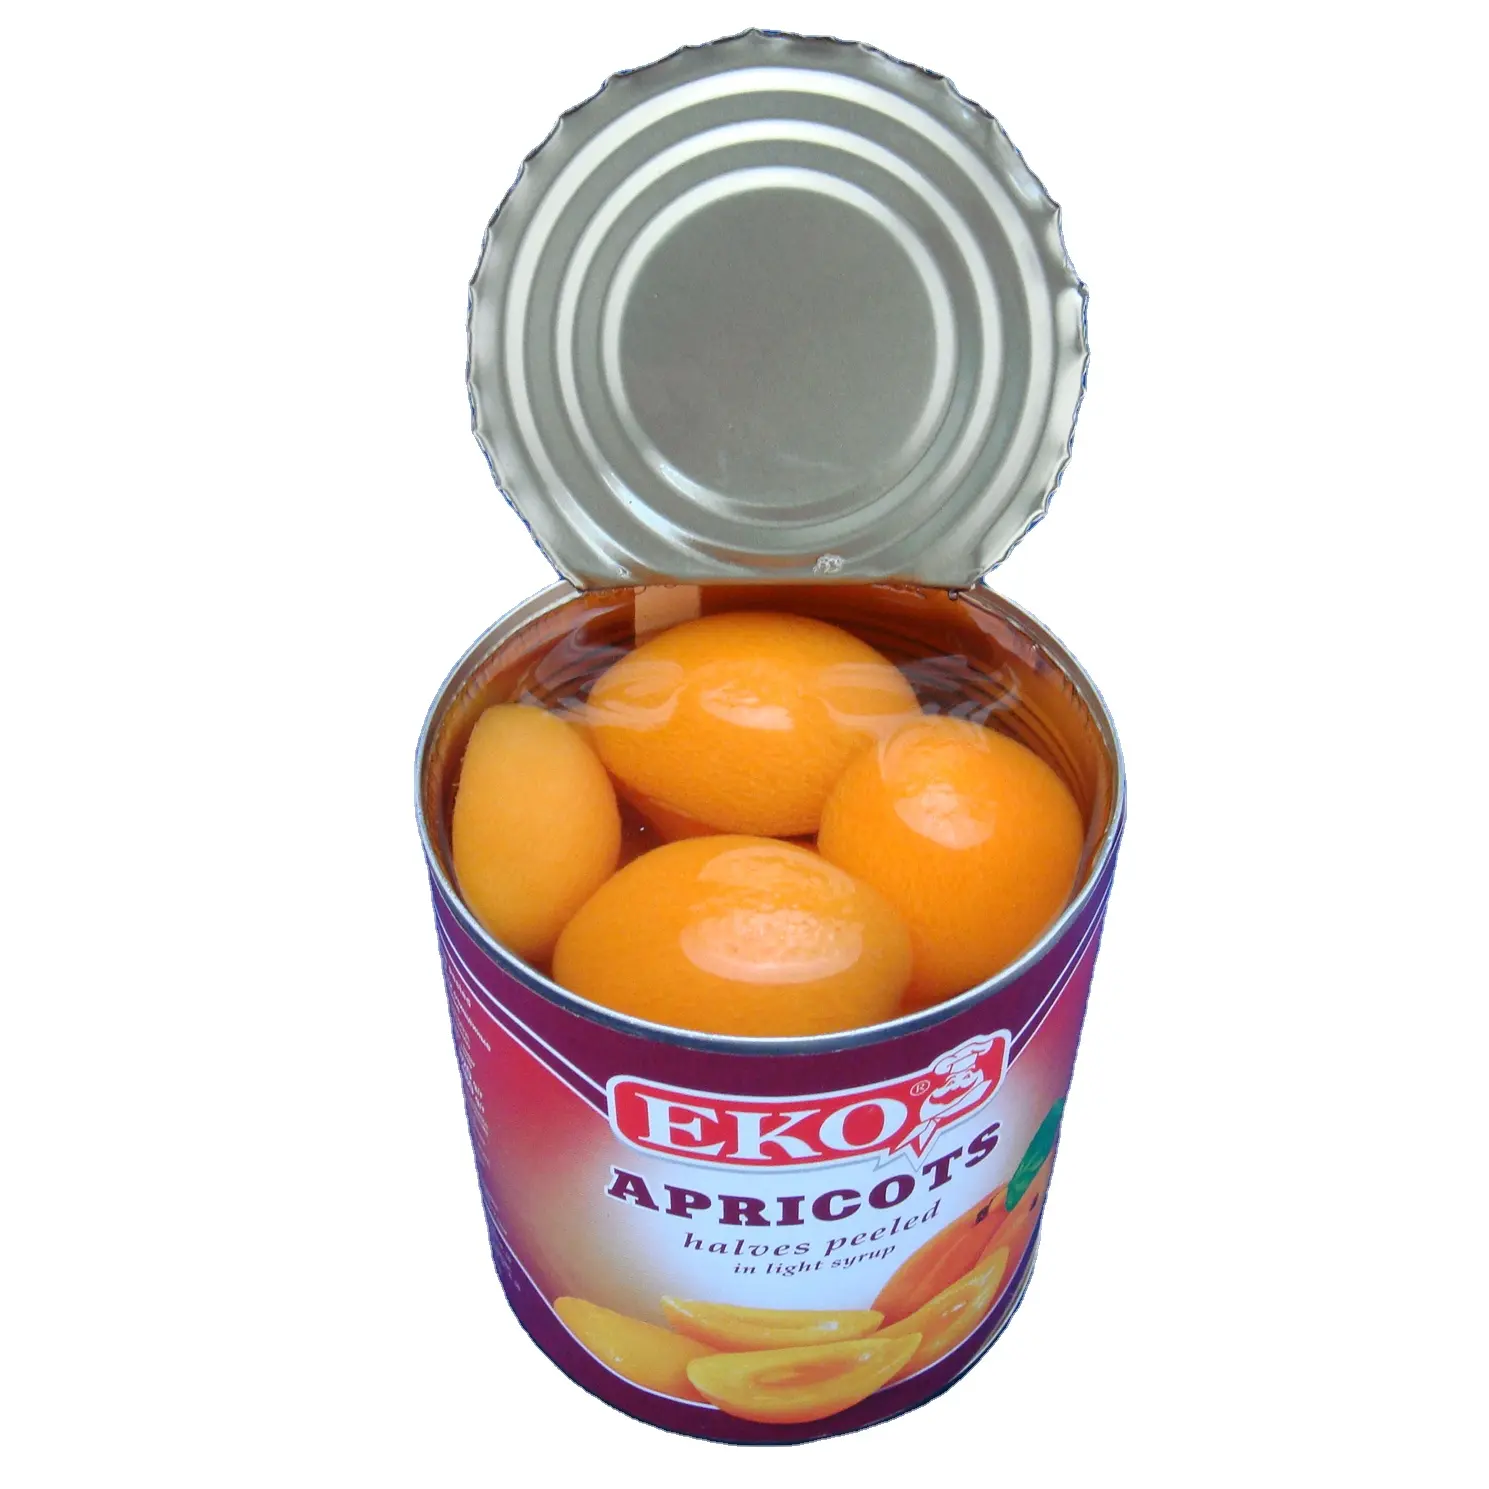 Konserven apricot hälften in licht sirup mit günstige preis konserven hersteller